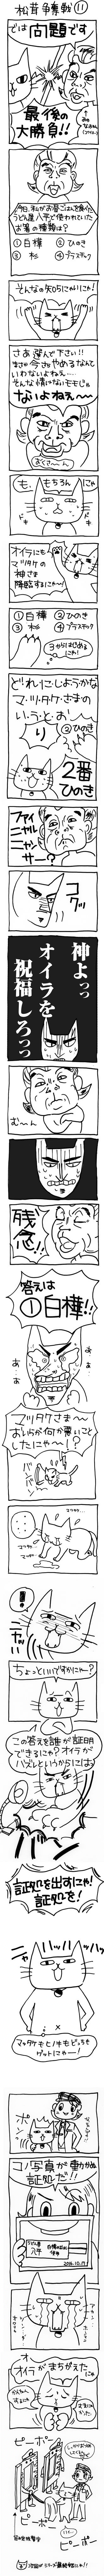 木工漫画　松茸争奪戦　１１1019